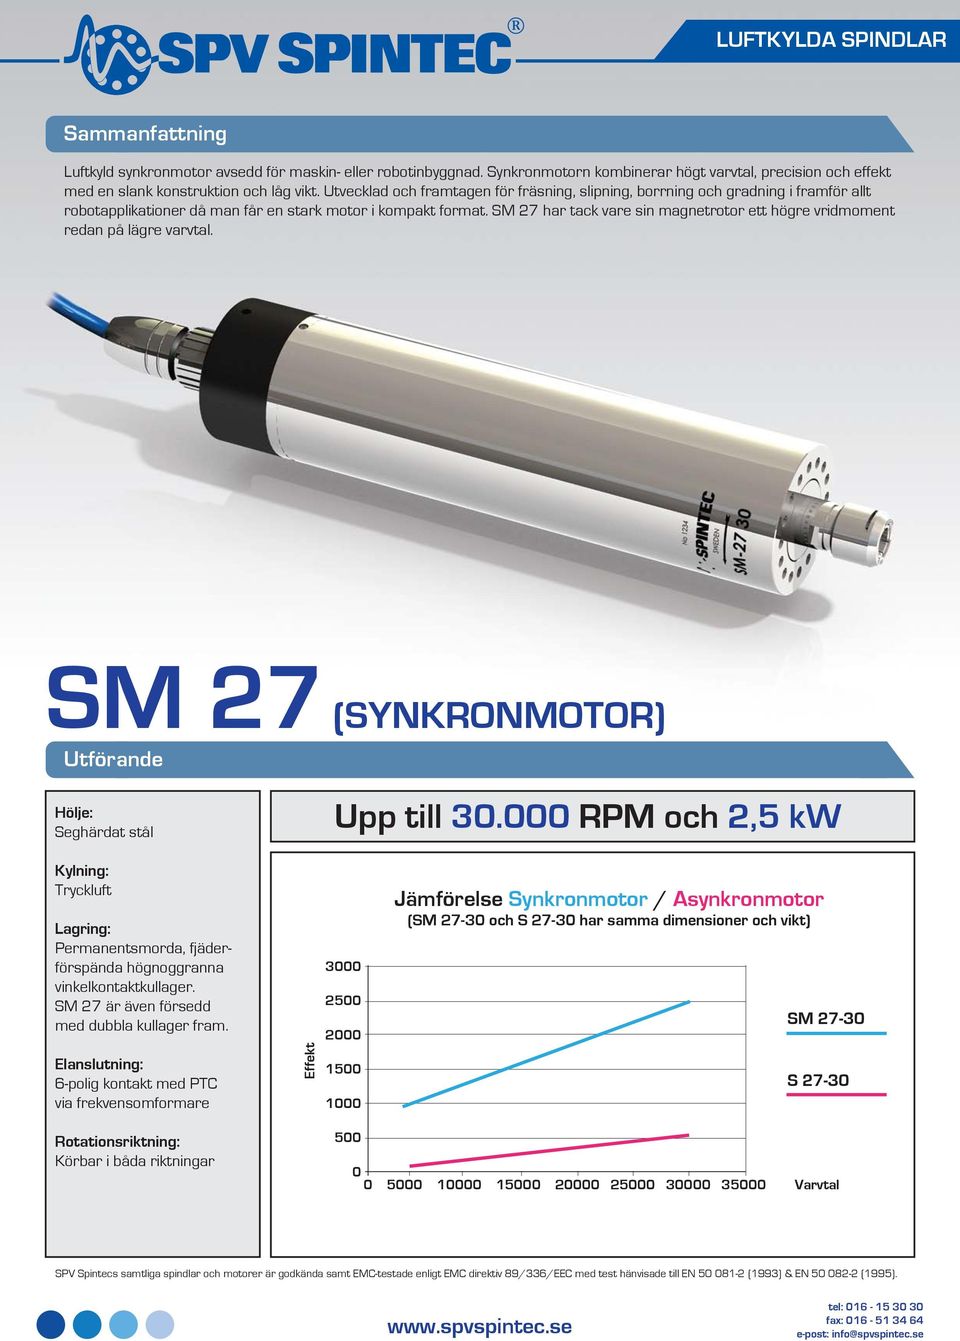 SM 27 har tack vare sin magnetrotor ett högre vridmoment redan på lägre varvtal. SM 27 (SYNKRONMOTOR) Utförande Hölje: Seghärdat stål Upp till 30.